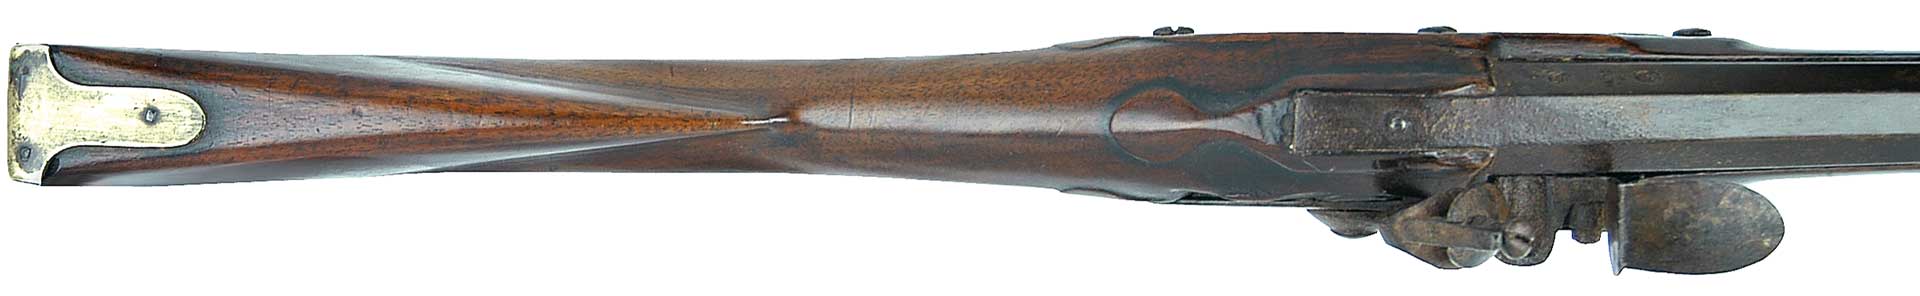 rifle stock wood metal gun flintlock brass gold engraving